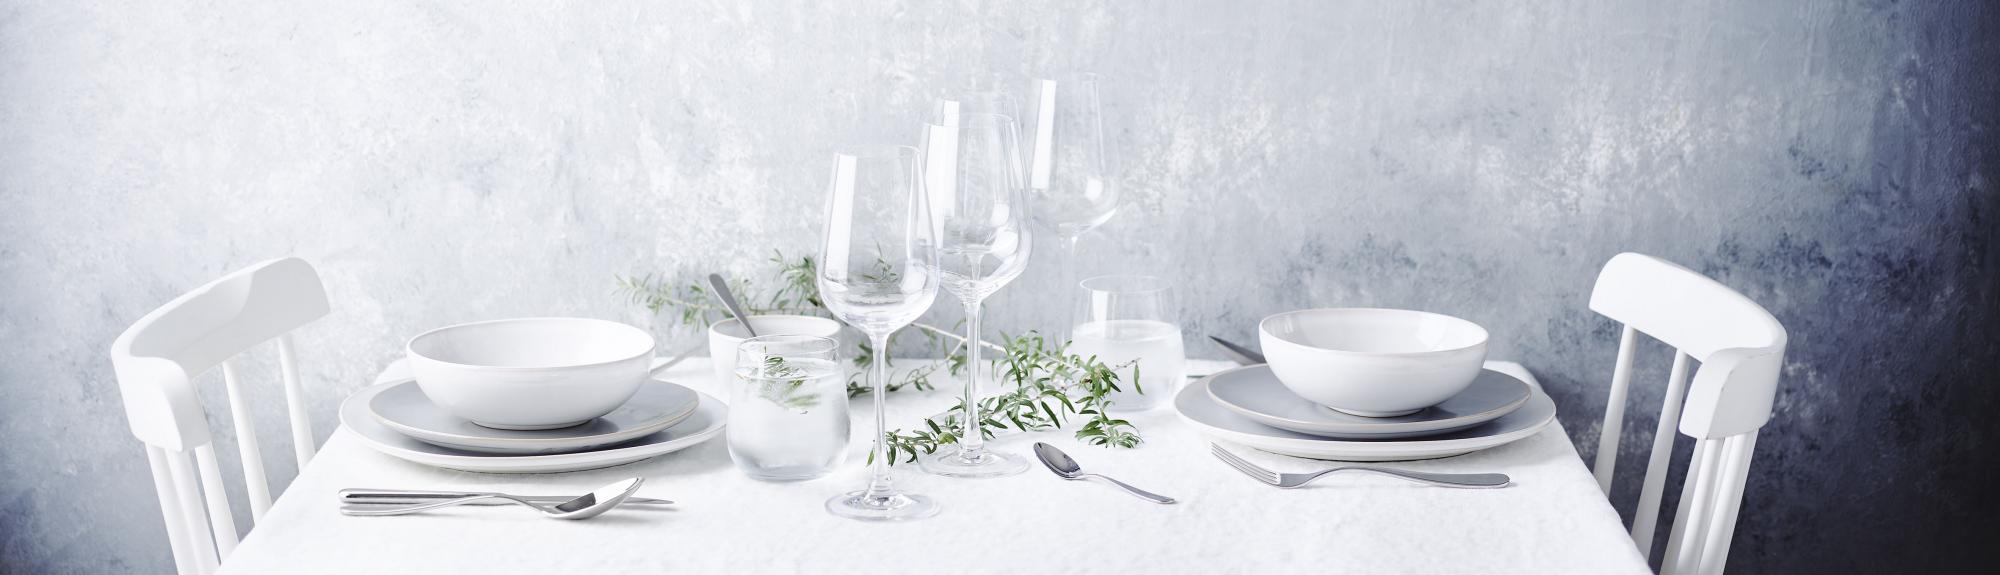 Keltum tableware dinnerware glasses cutlery cookware